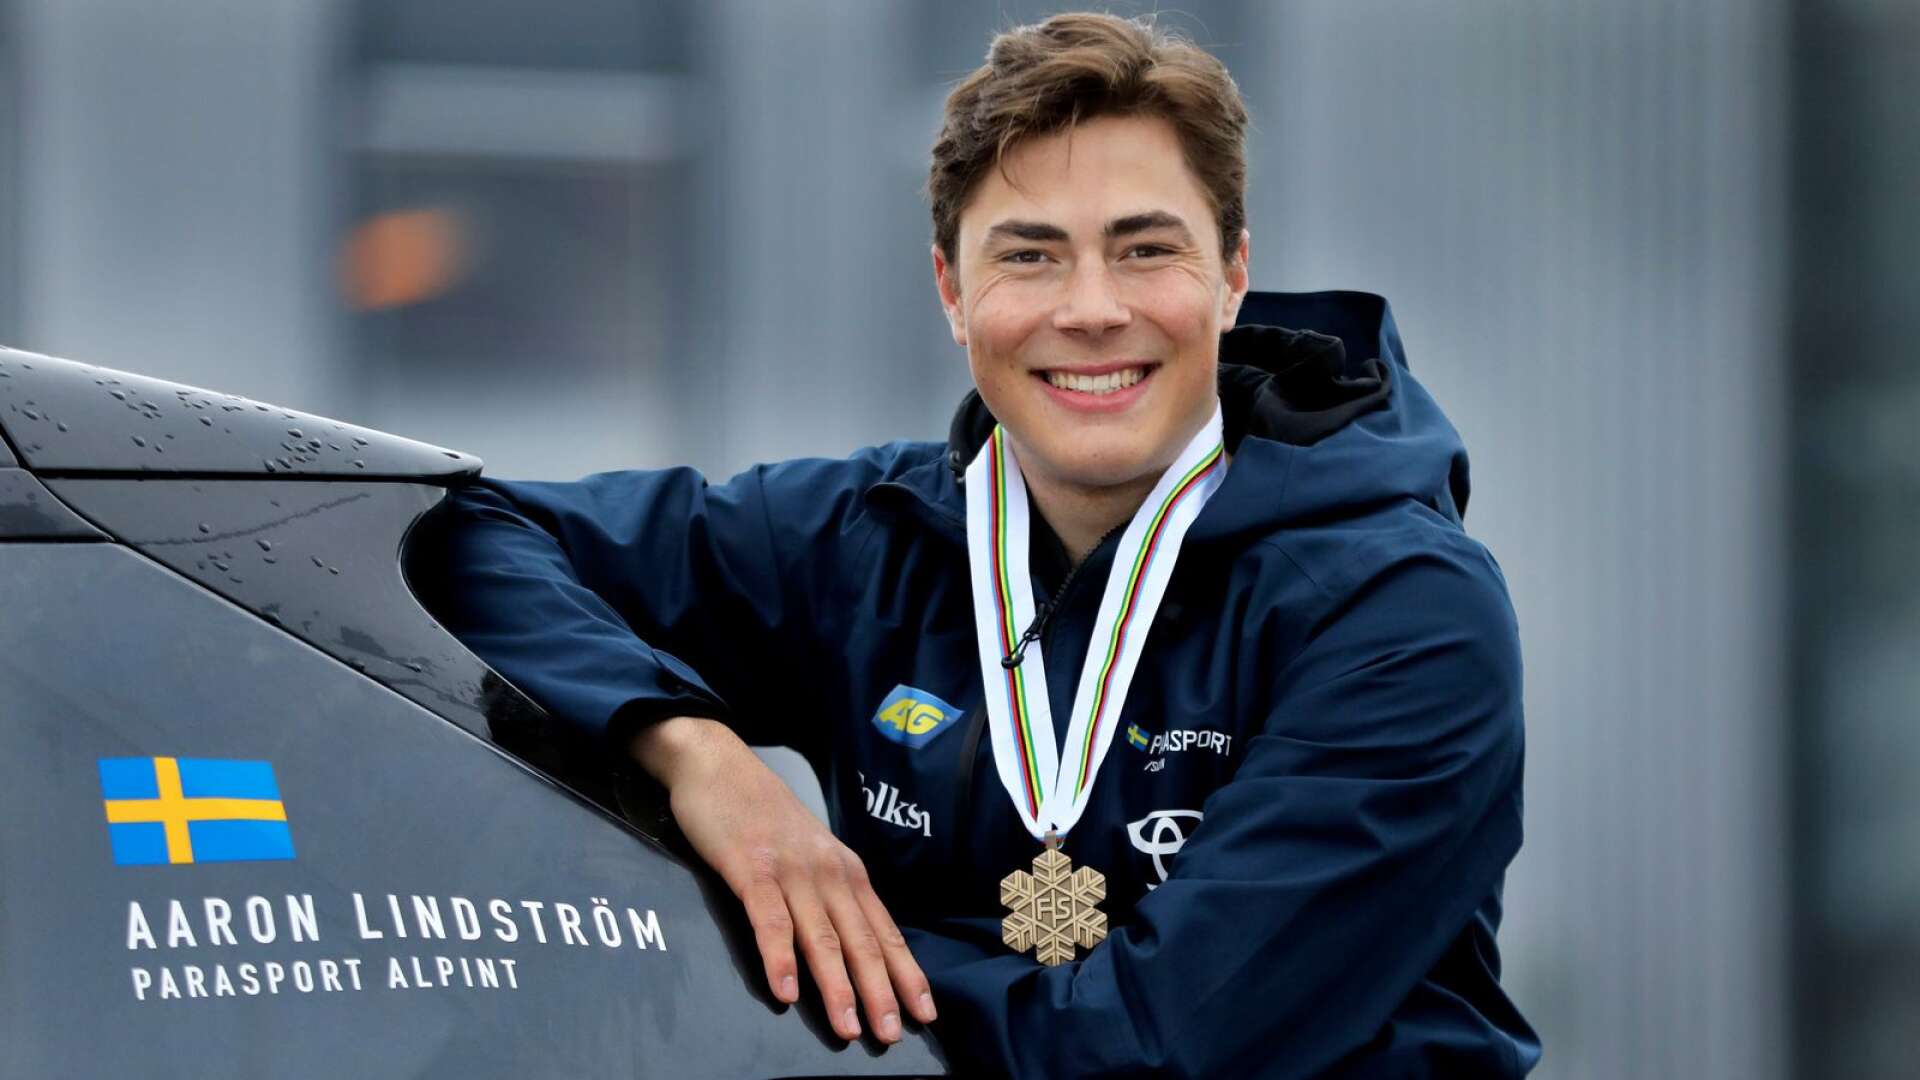 Aaron Lindström tog brons på VM. Nu har han lagt två pallplatser ytterligare i världscupen till sin meritlista.